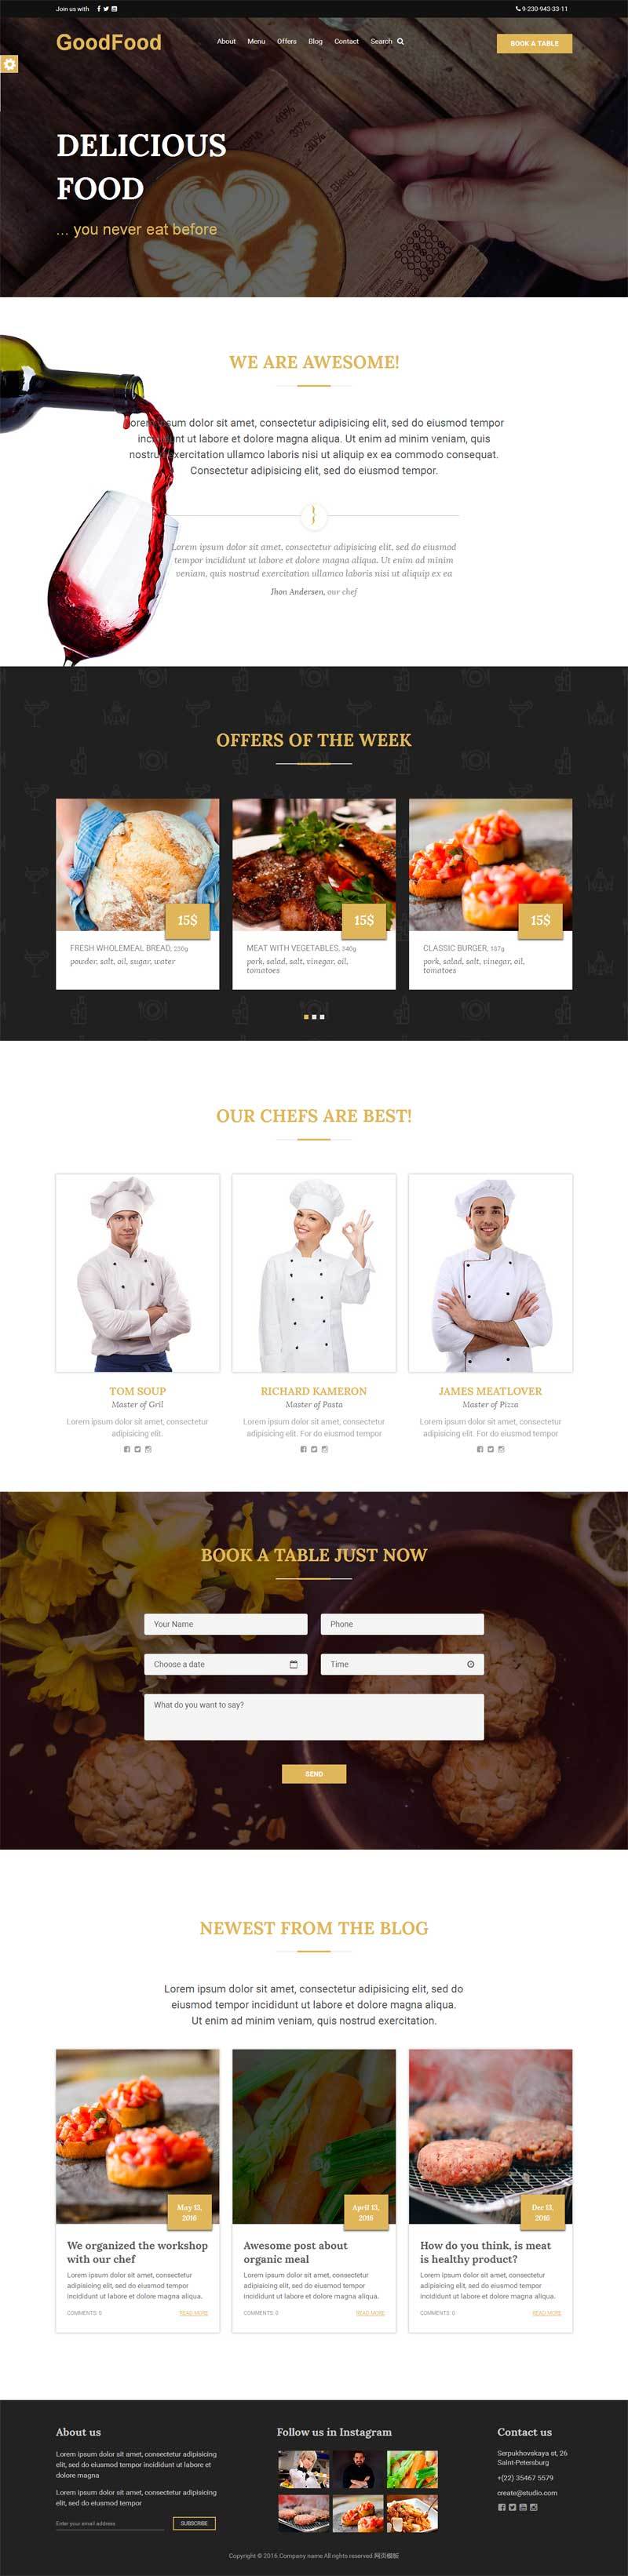 餐厅美食网站欧美风格的模板下载